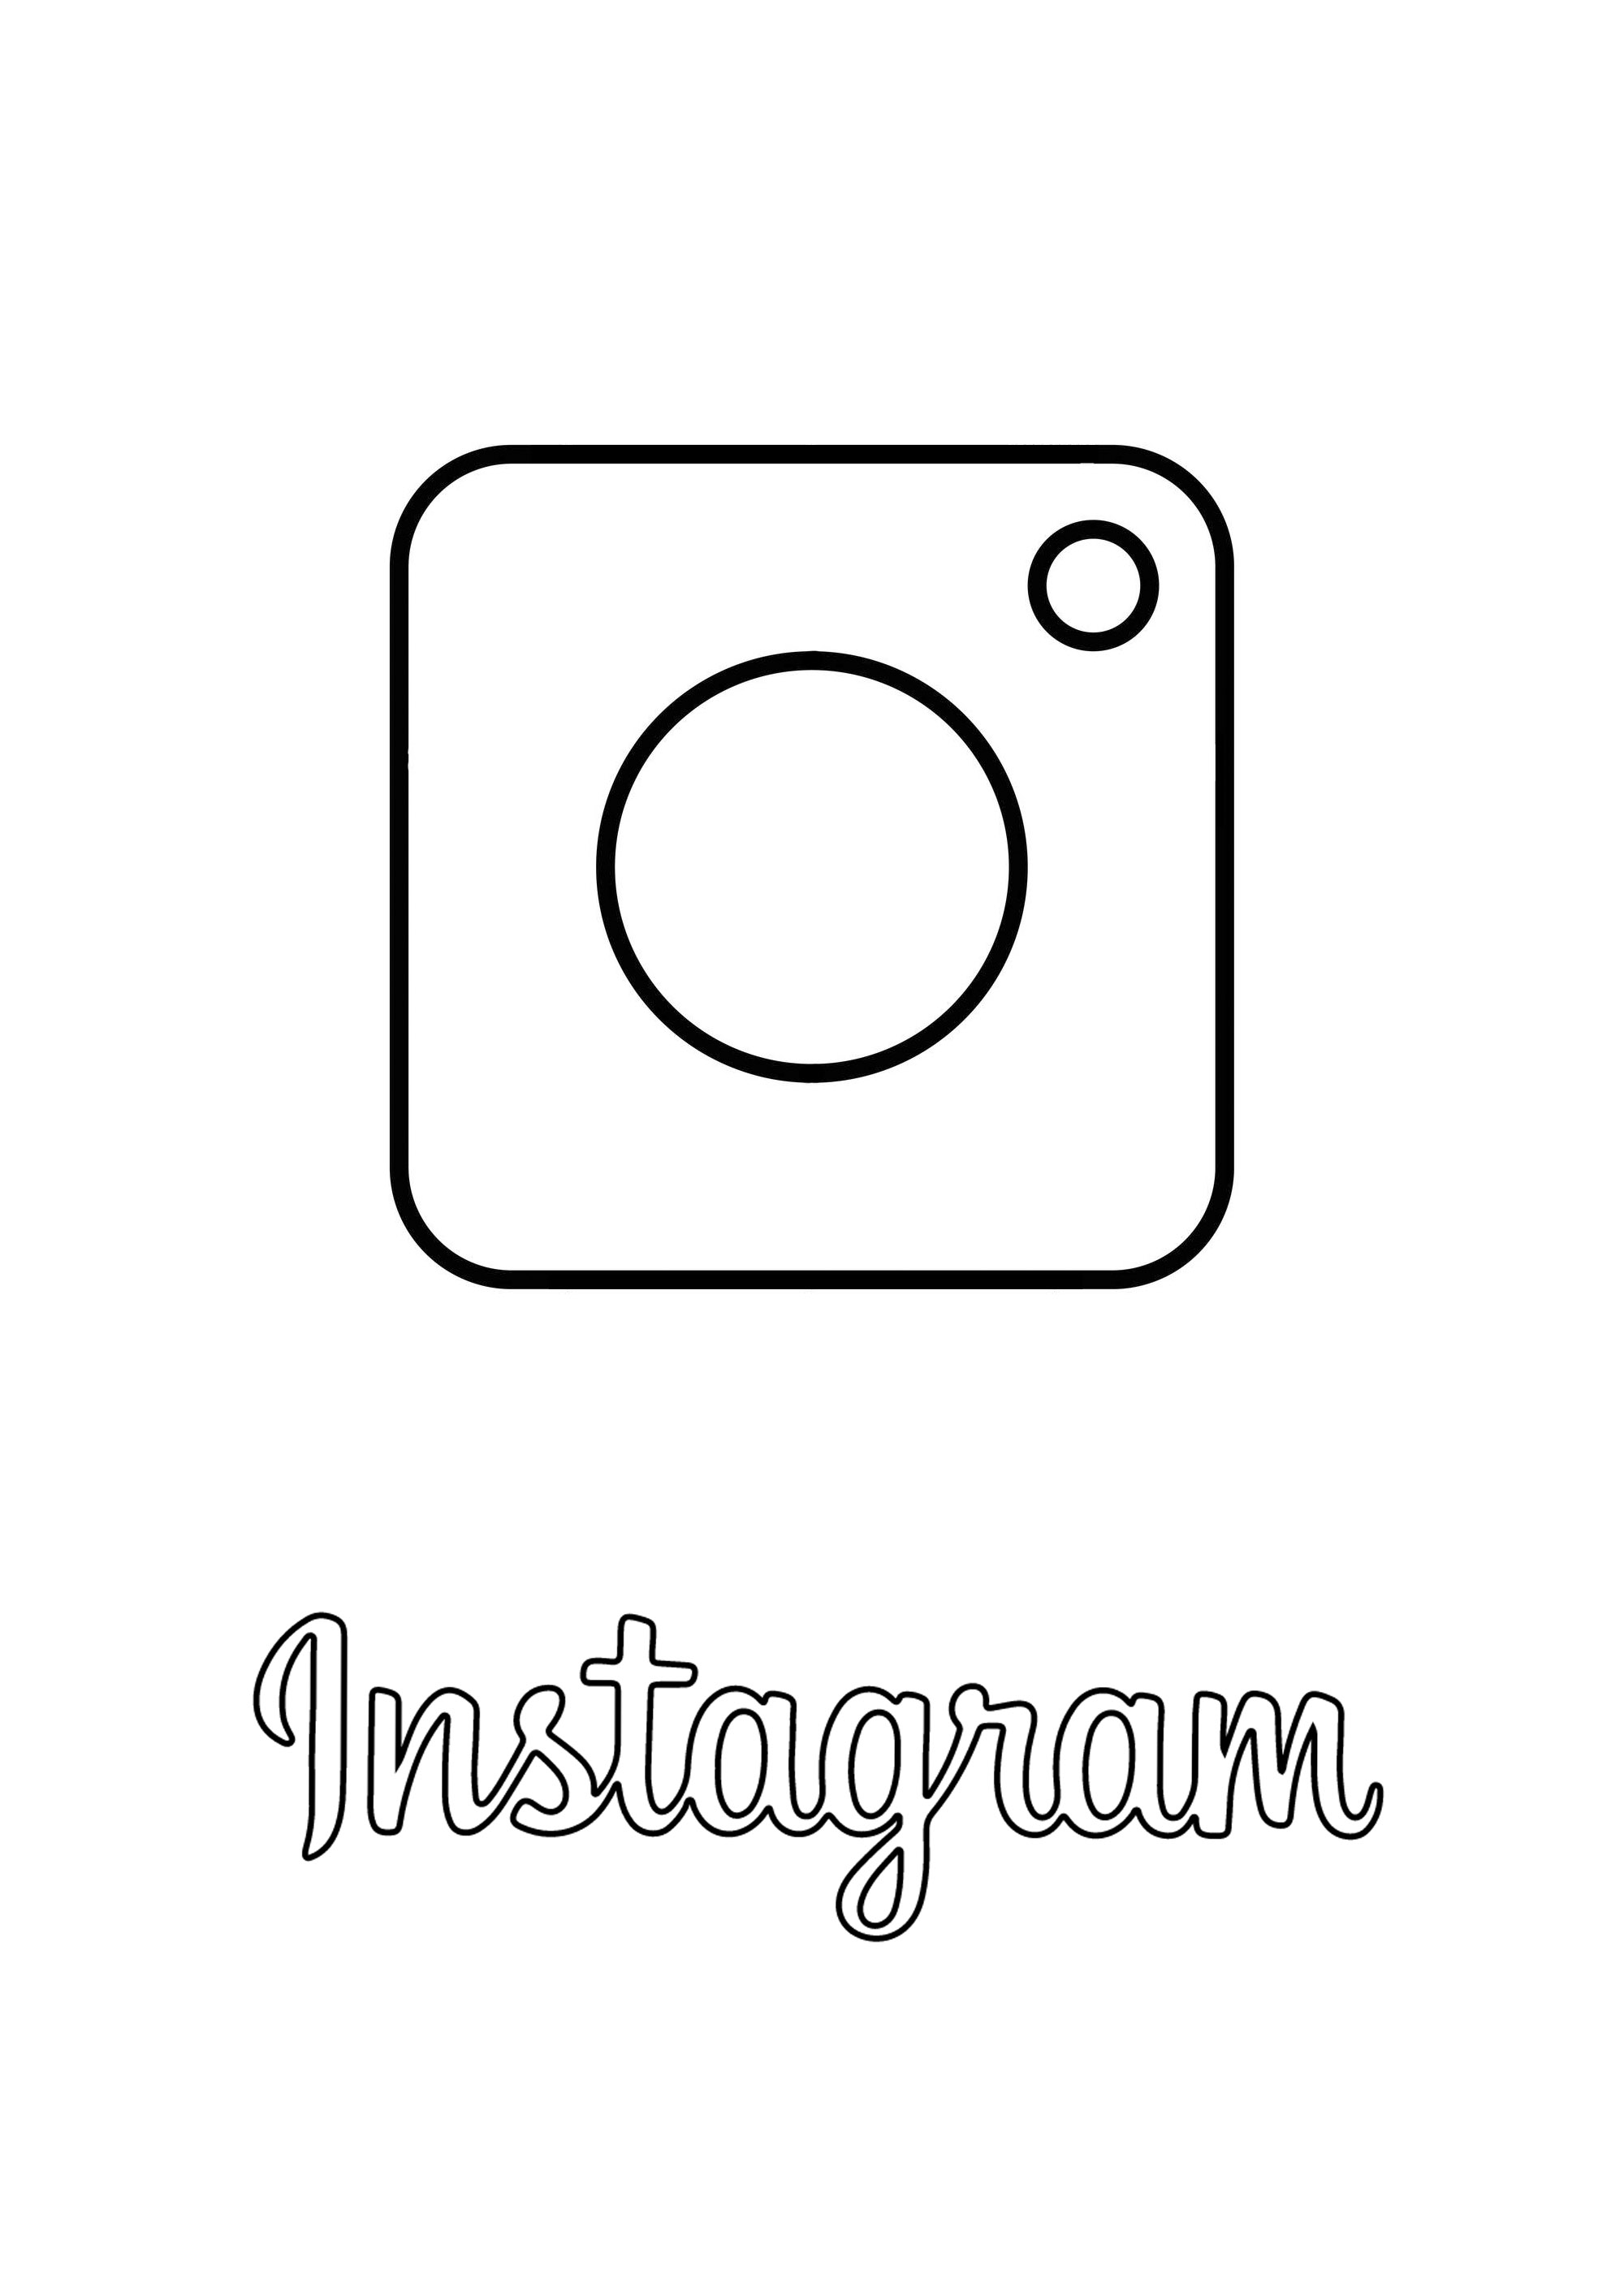 Logotipo de Instagram para colorear. Instagram es una aplicación, red social y servicio para compartir fotos y vídeos fundada y lanzada en octubre de 2010 por el estadounidense Kevin Systrom y el brasileño Michel Mike Krieger